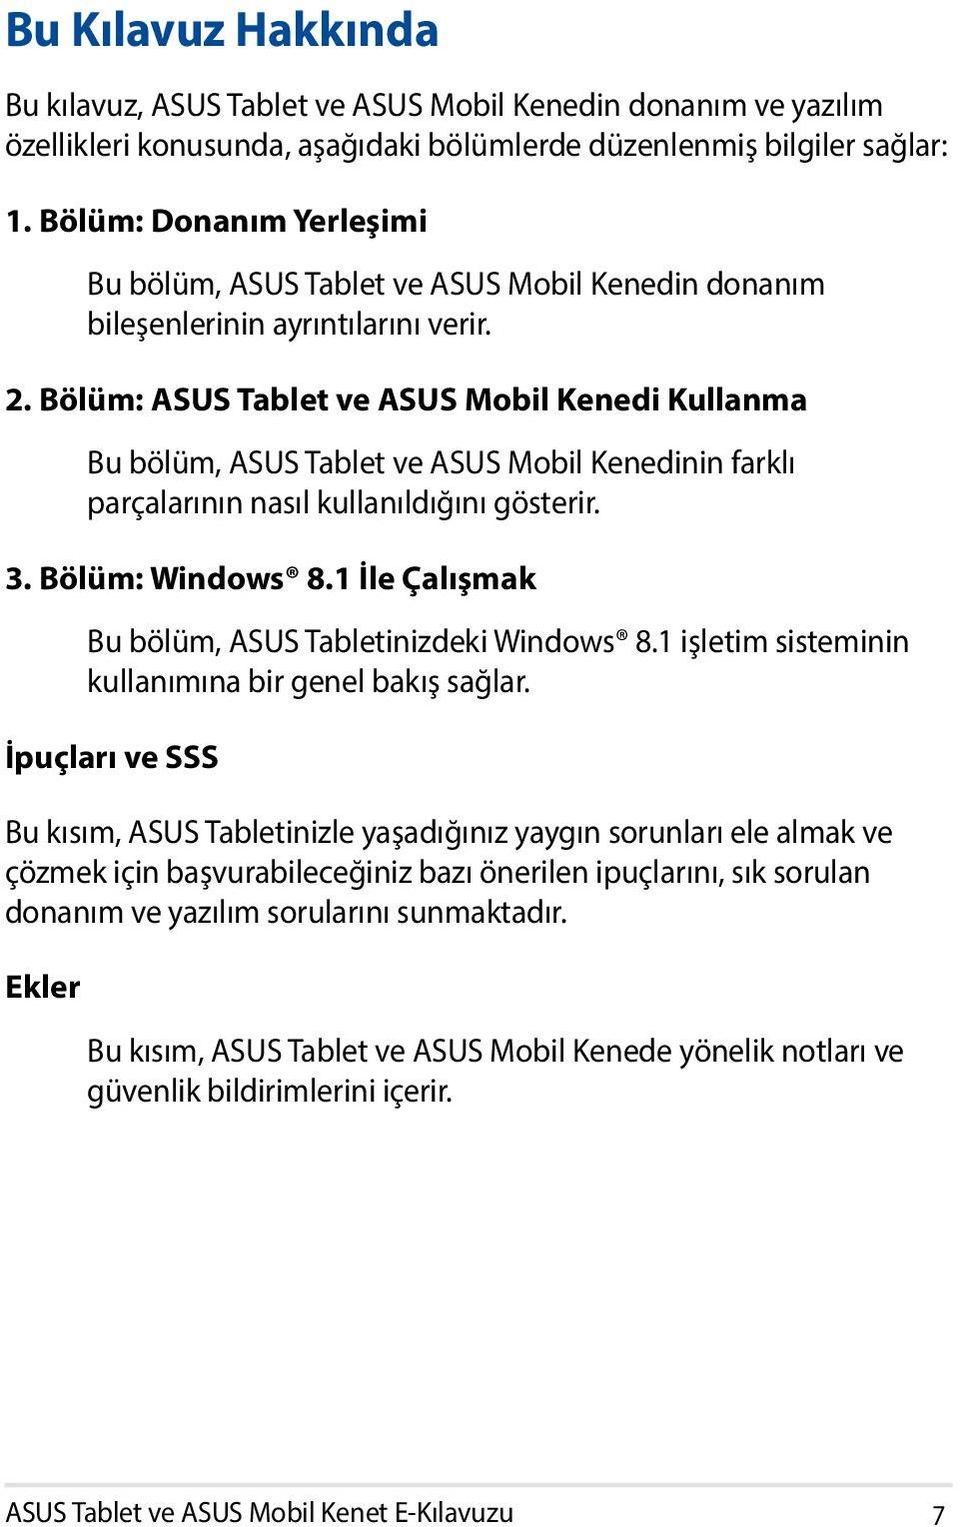 Bölüm: ASUS Tablet ve ASUS Mobil Kenedi Kullanma Bu bölüm, ASUS Tablet ve ASUS Mobil Kenedinin farklı parçalarının nasıl kullanıldığını gösterir. 3. Bölüm: Windows 8.